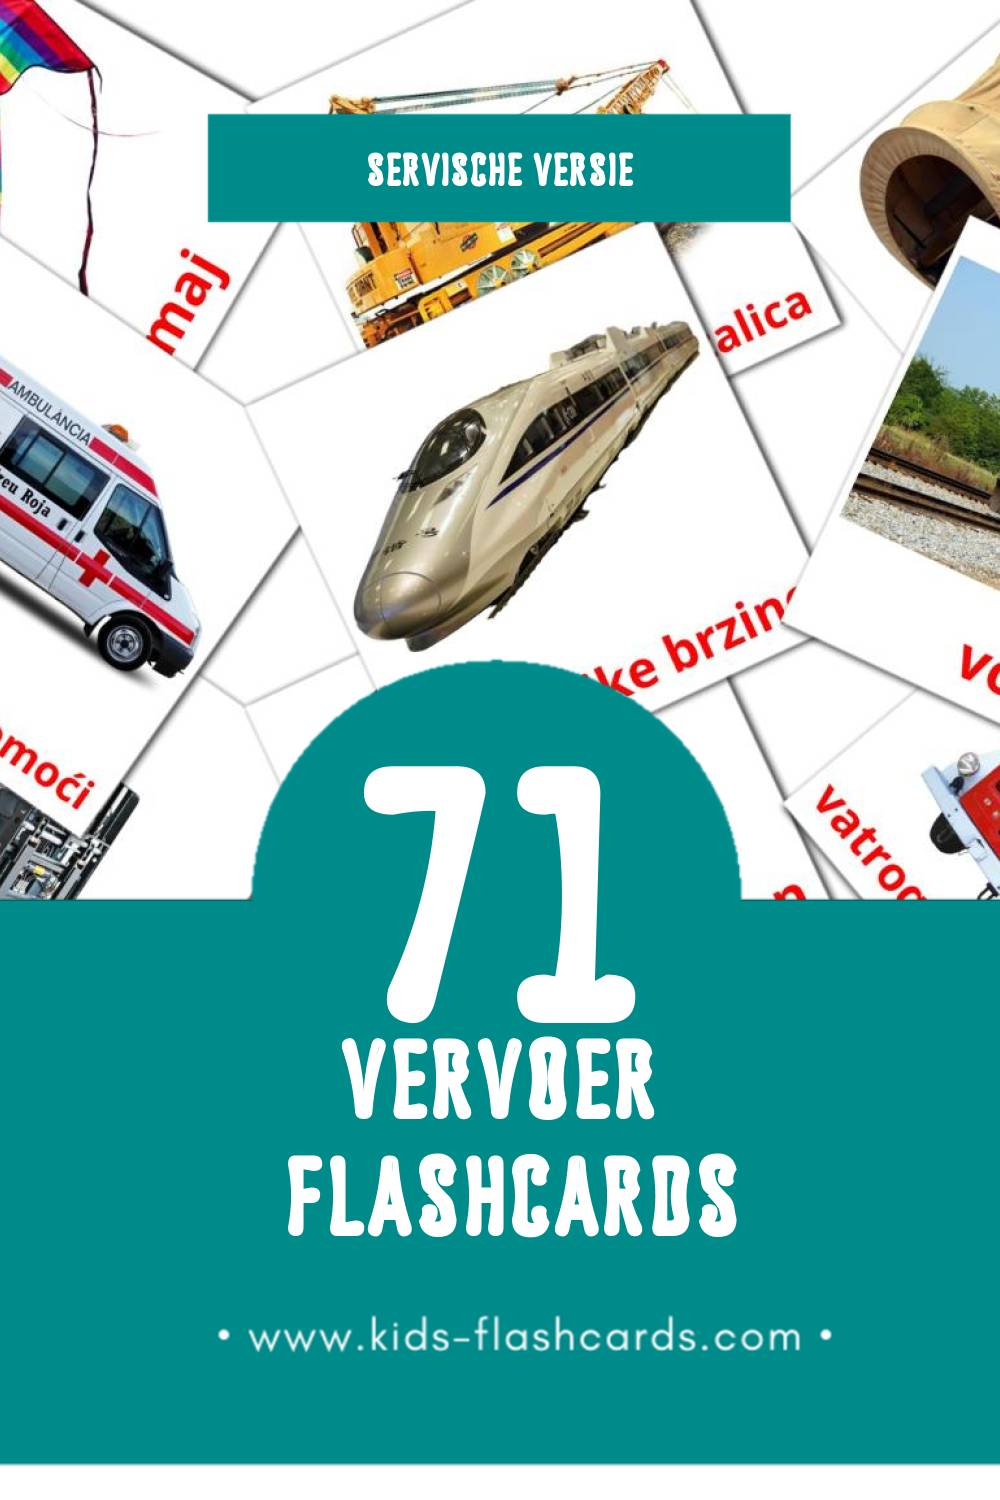 Visuele Prevozna sredstva Flashcards voor Kleuters (71 kaarten in het Servisch)